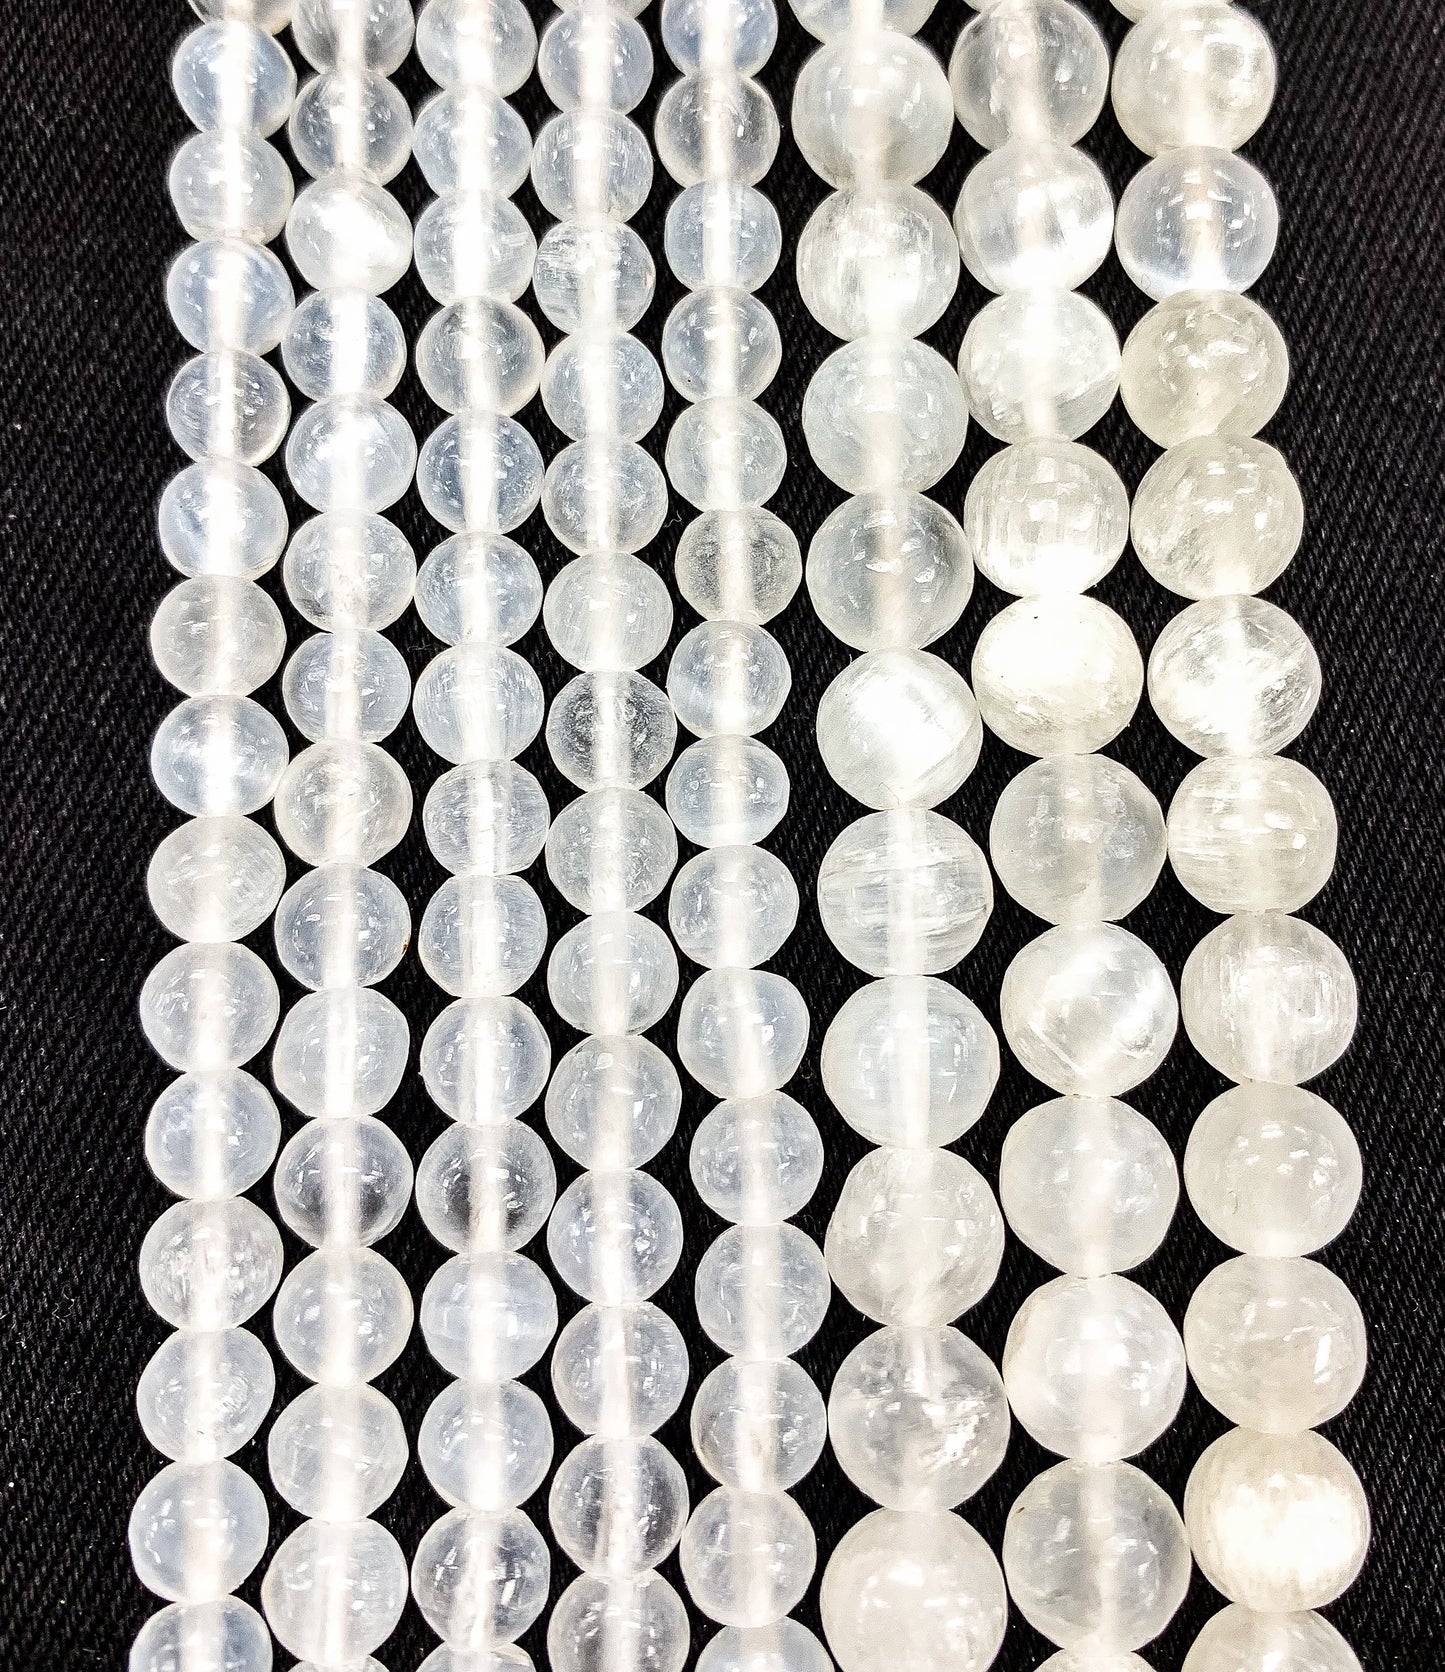 Natural Gypsum Selenite Beads 6mm